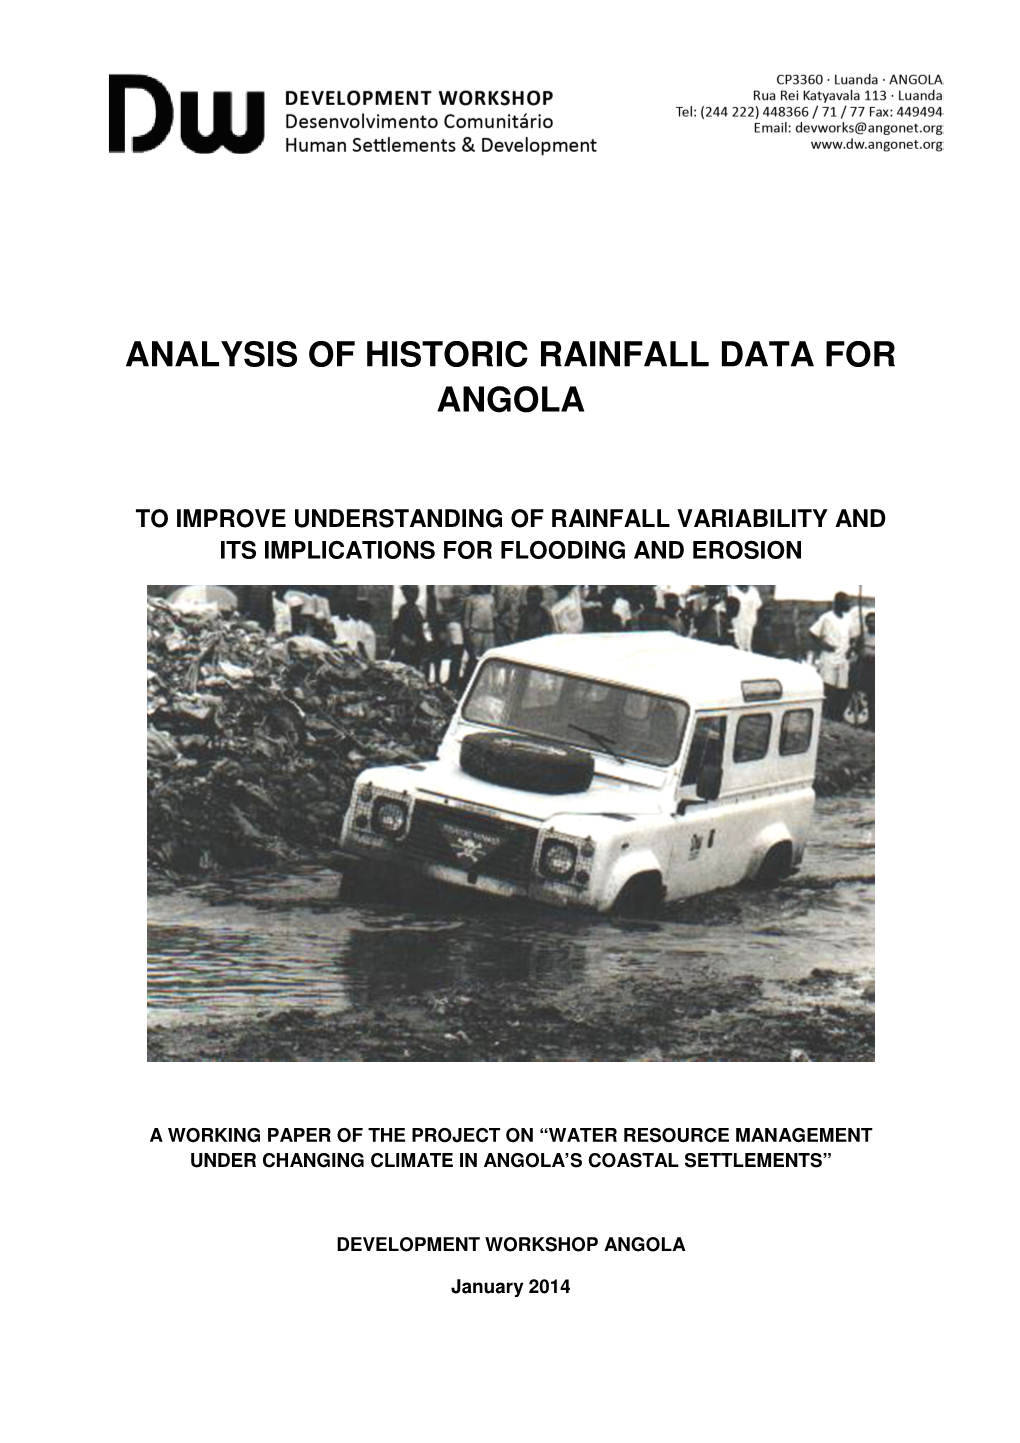 Analysis of Historic Rainfall Data for Angola